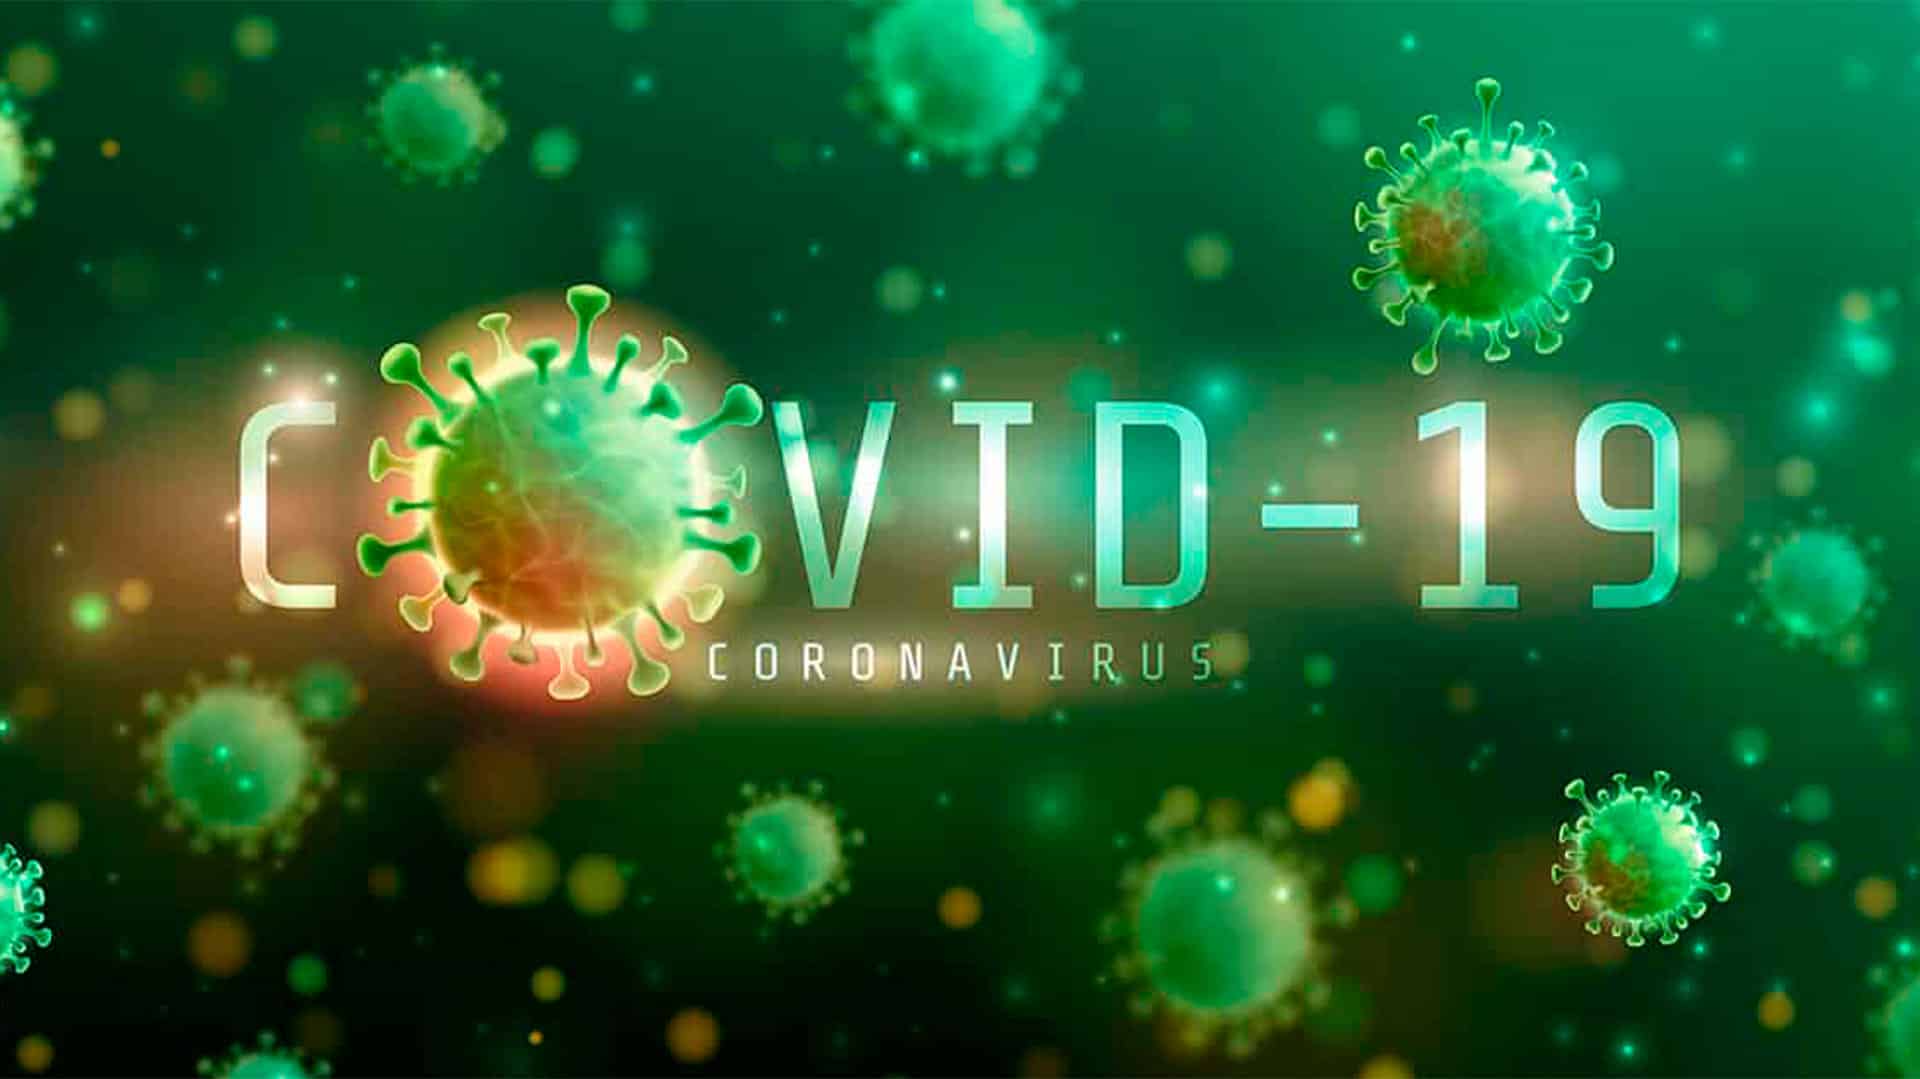 Golpes com o coronavírus são isca para invadir e vazar dados